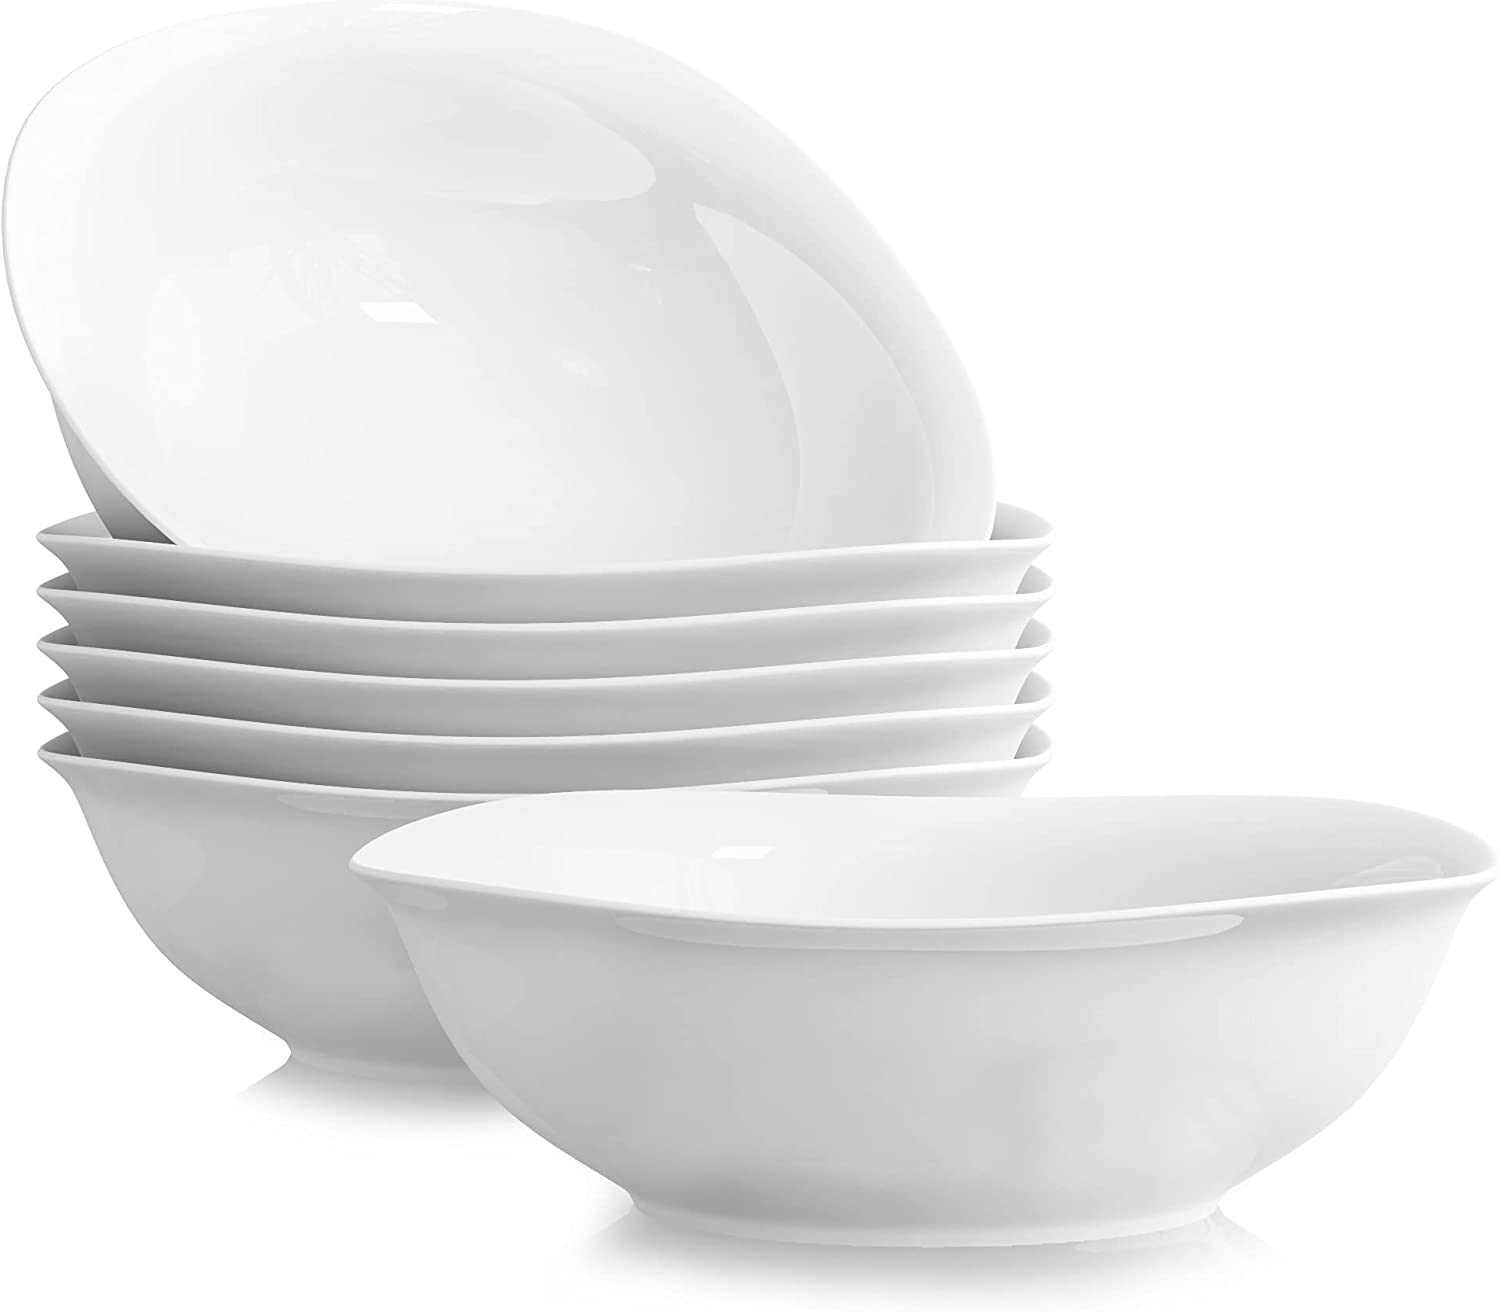 MALACASA, Elisa Series, 6-Piece Set Porcelain 6.7 Inch / 17.02 cm Cereal / Salad / Dessert Bowls for 6 People